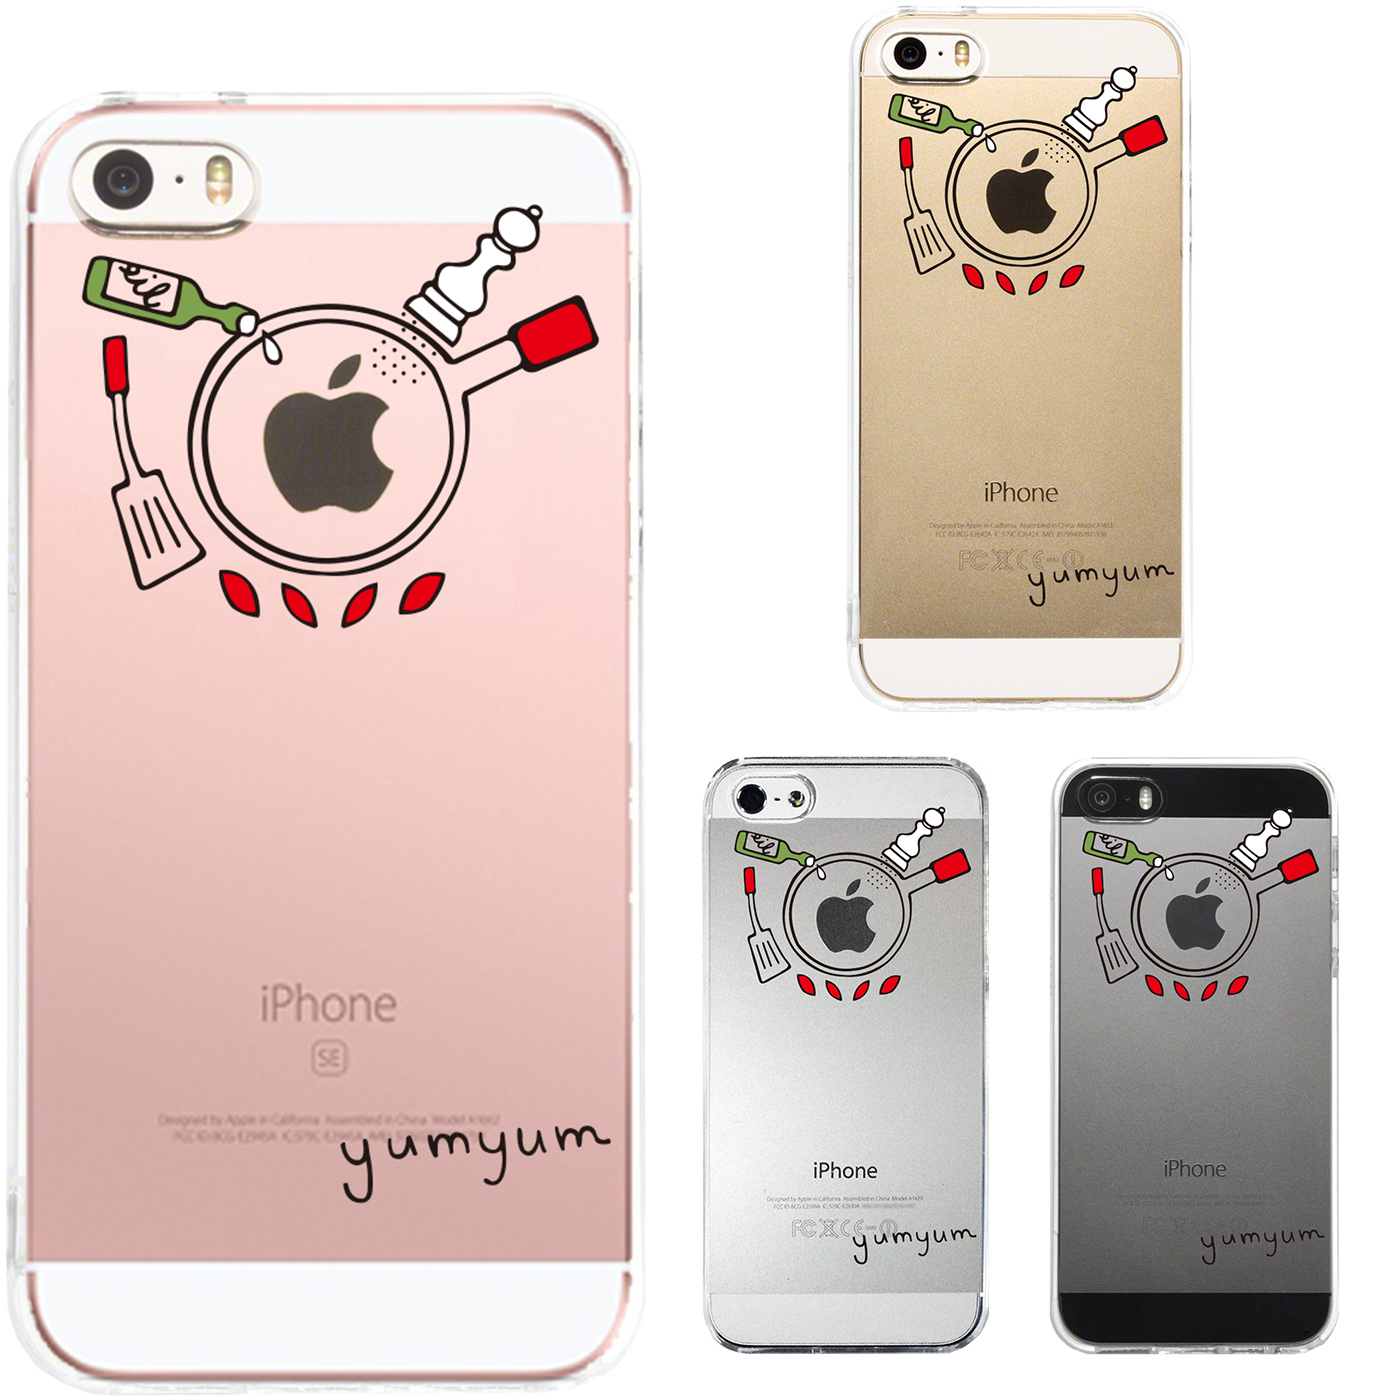 iPhone SE 5S/5 対応 アイフォン ハード クリアケース カバー シェル ジャケット 調理中 yumyum2